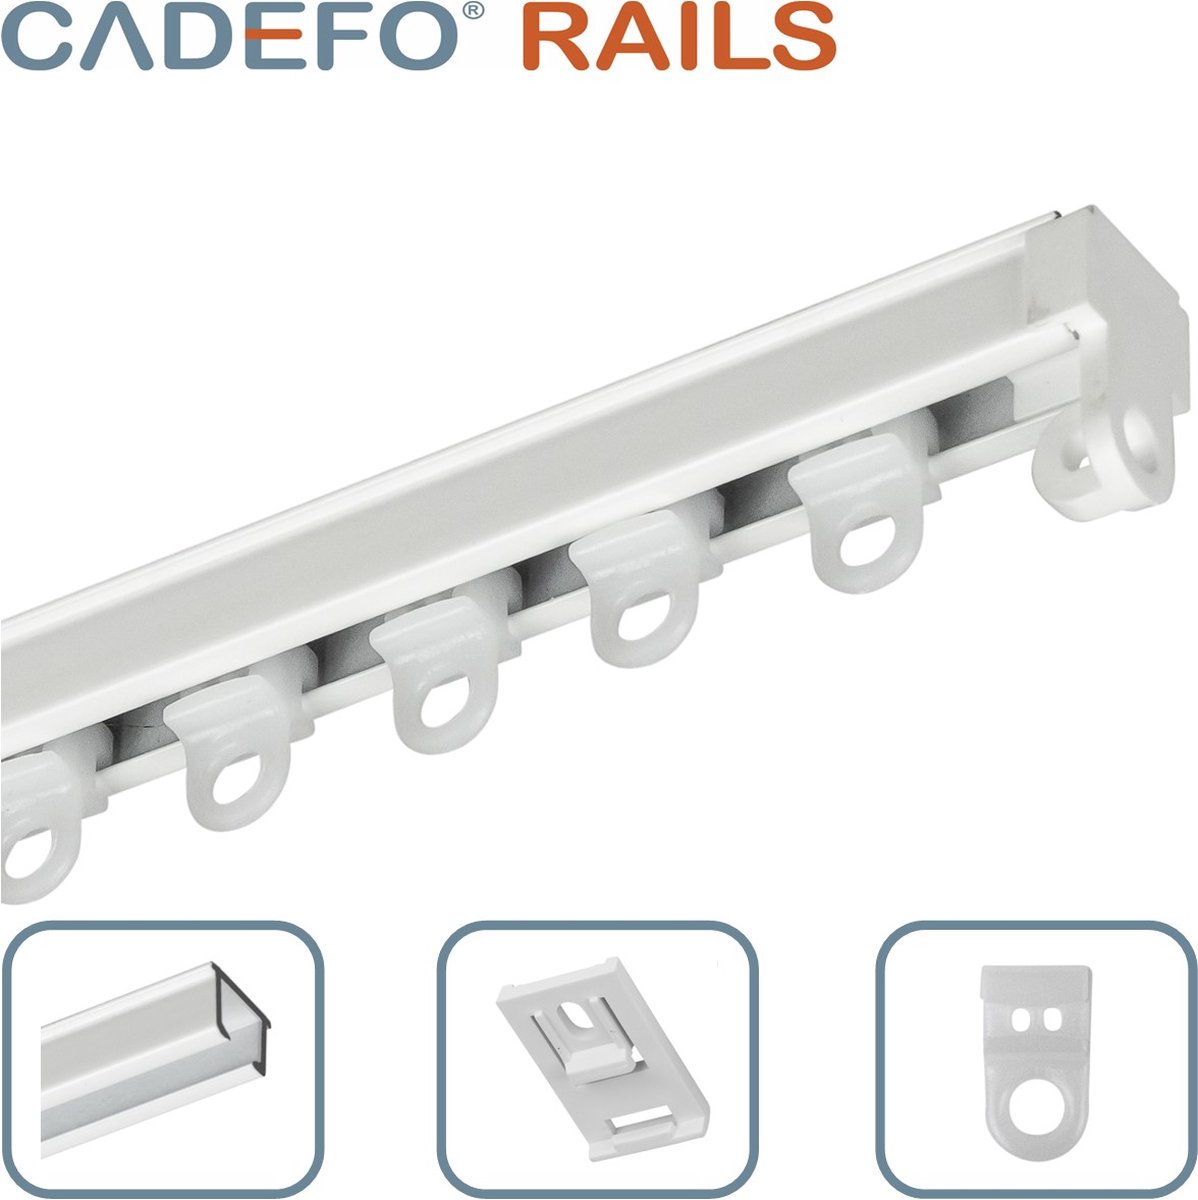 CADEFO RAILS (551 - 600 cm) Gordijnrails - Compleet op maat! - UIT 1 STUK - Leverbaar tot 6 meter - Plafondbevestiging - Lengte 562 cm